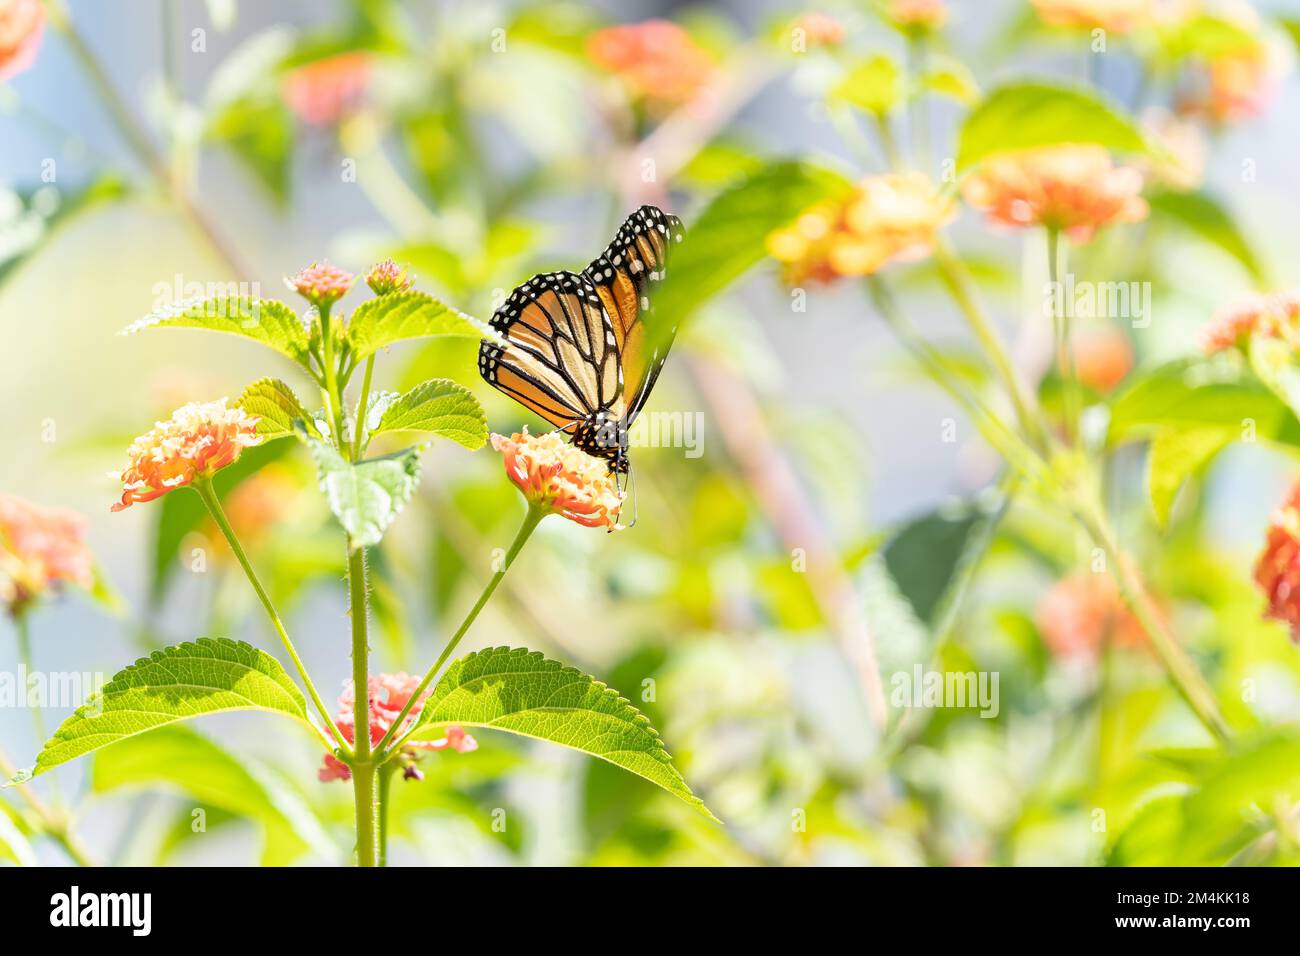 Mariposa monarca y flores brillantes de lantana de verano sobre un fondo de follaje y fondo verde bokeh. Imagen artística macro. Foto de stock